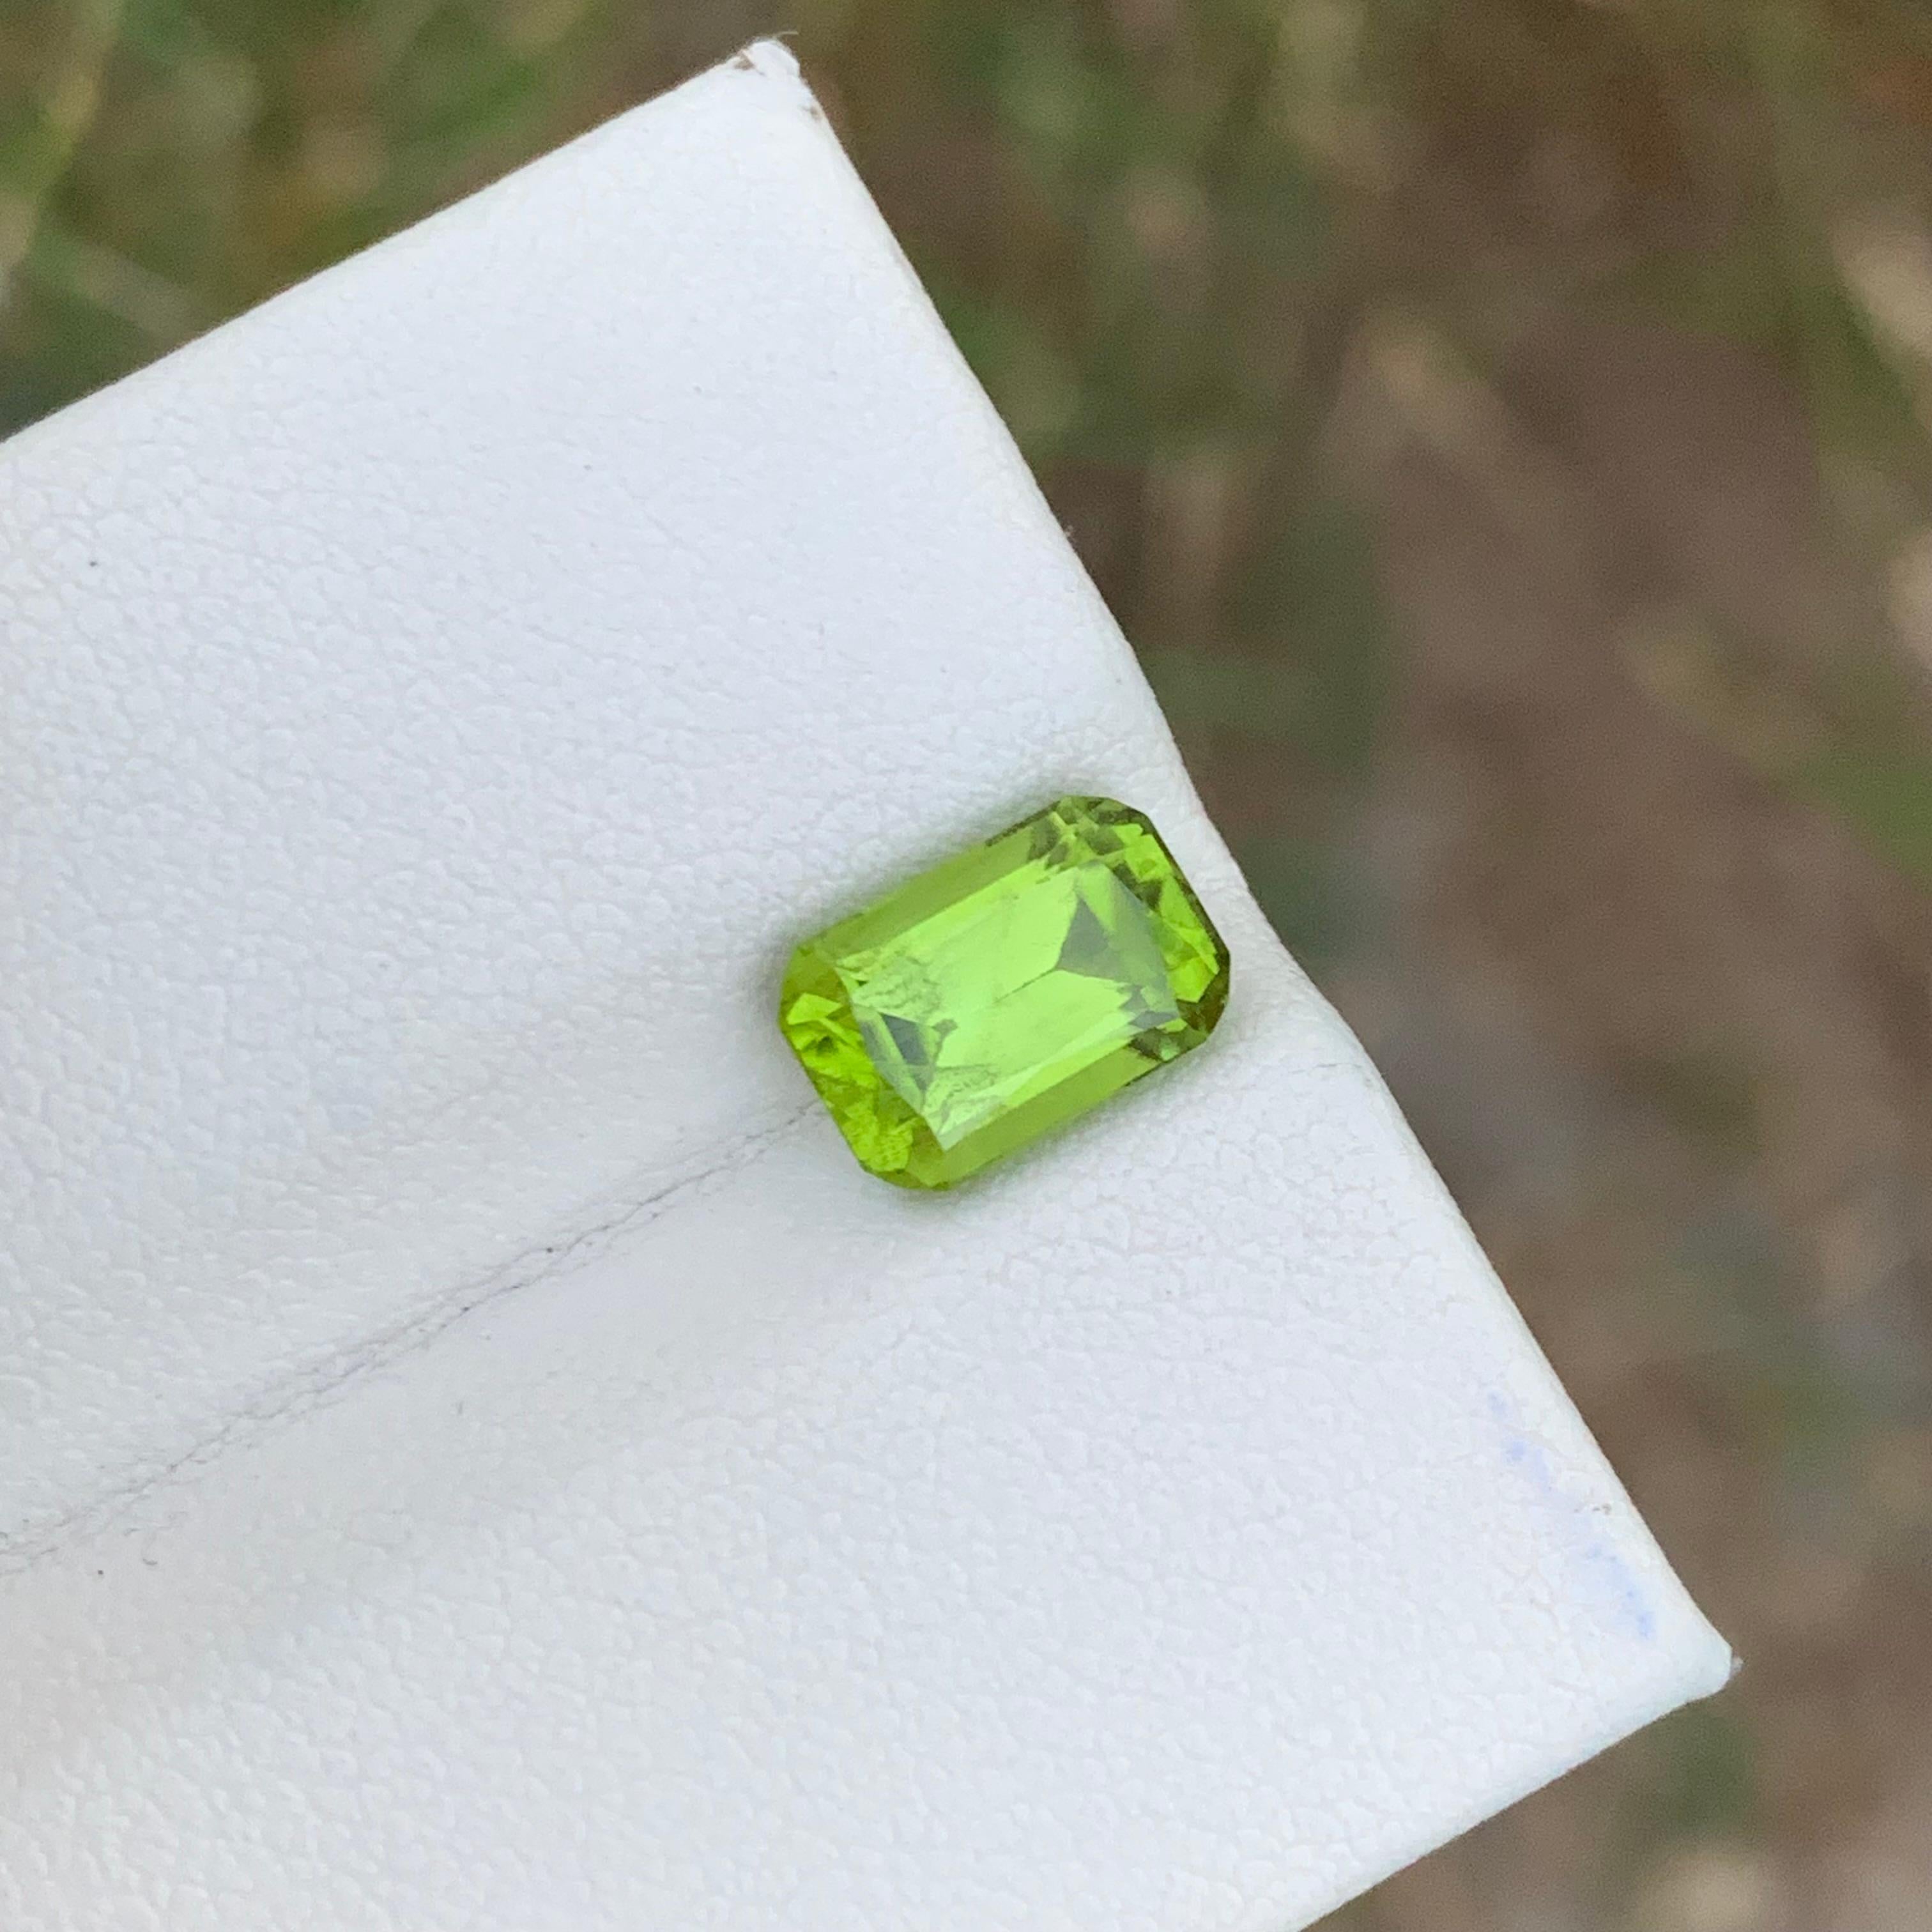 Péridot en vrac 
Poids : 2,80 carats 
Dimension : 9.3x6.3x5.2 Mm
Origine : Vallée de Supat Pakistan 
Forme : Coussin ovale
Couleur : Vert
Le péridot, une pierre précieuse d'un vert éclatant, est une variété d'olivine. Sa couleur unique va du vert